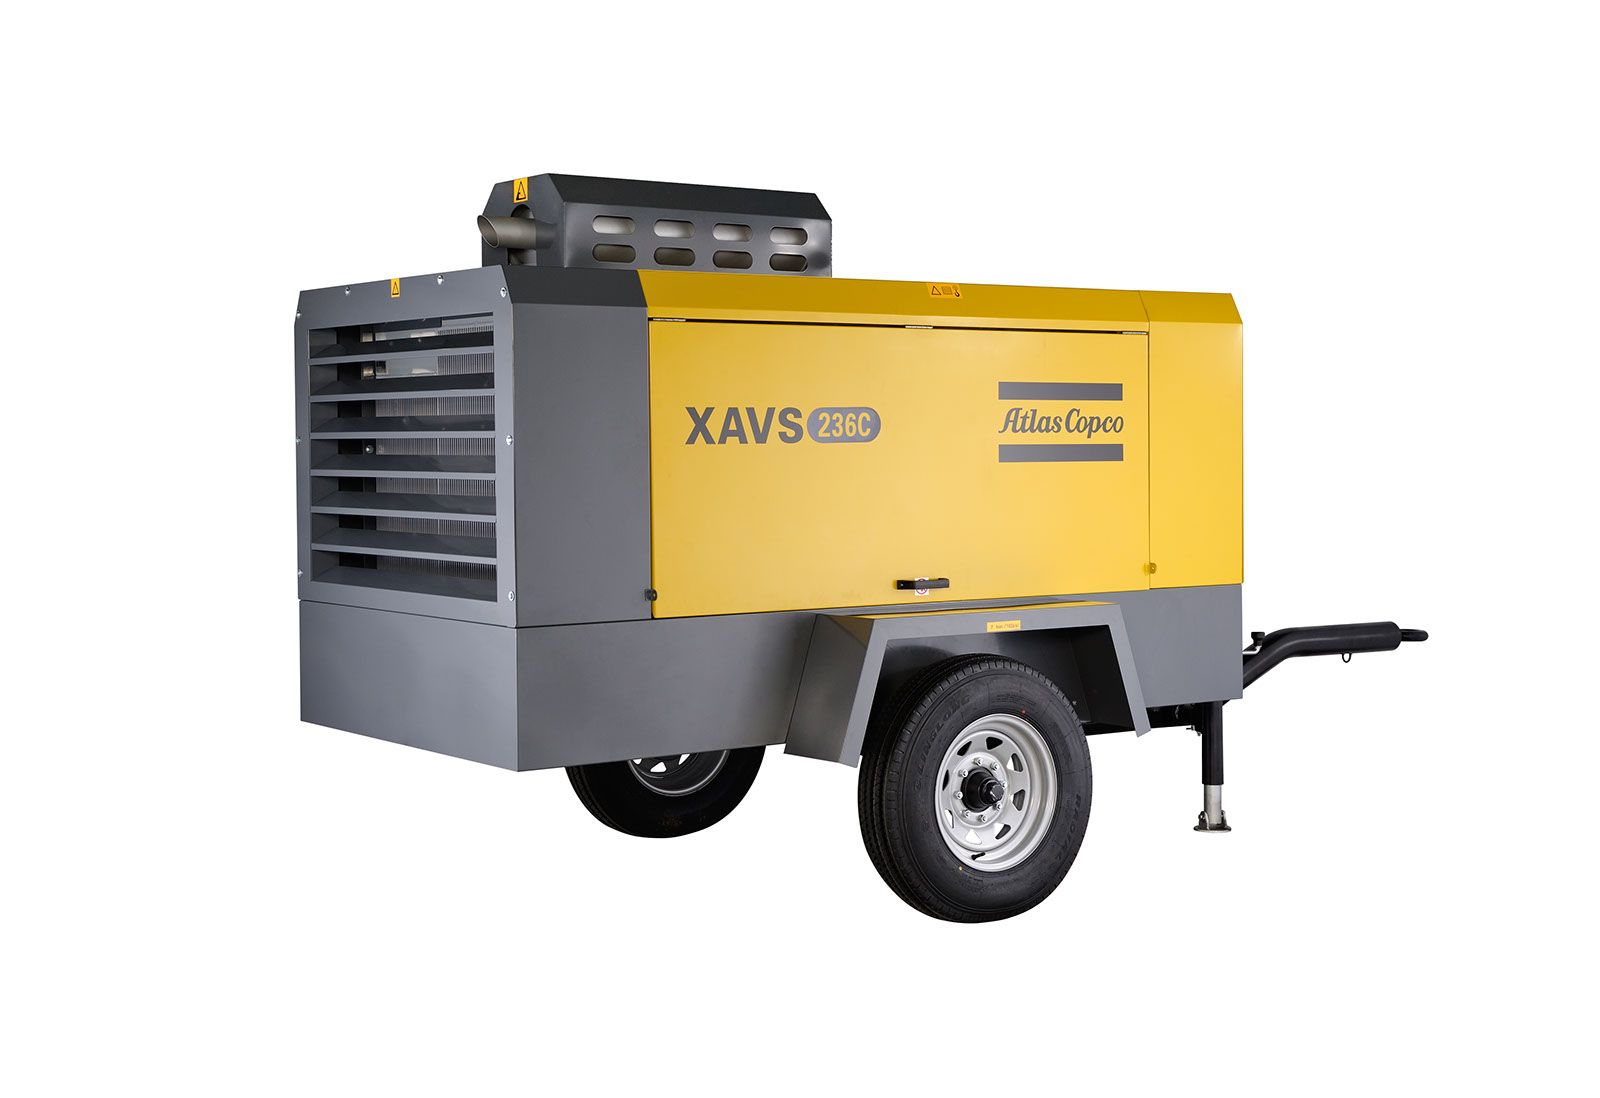 武汉市中低风压系列XAVS-236C厂家二手租售 阿特拉斯中型移动空压机 中低风压系列XAVS-236C